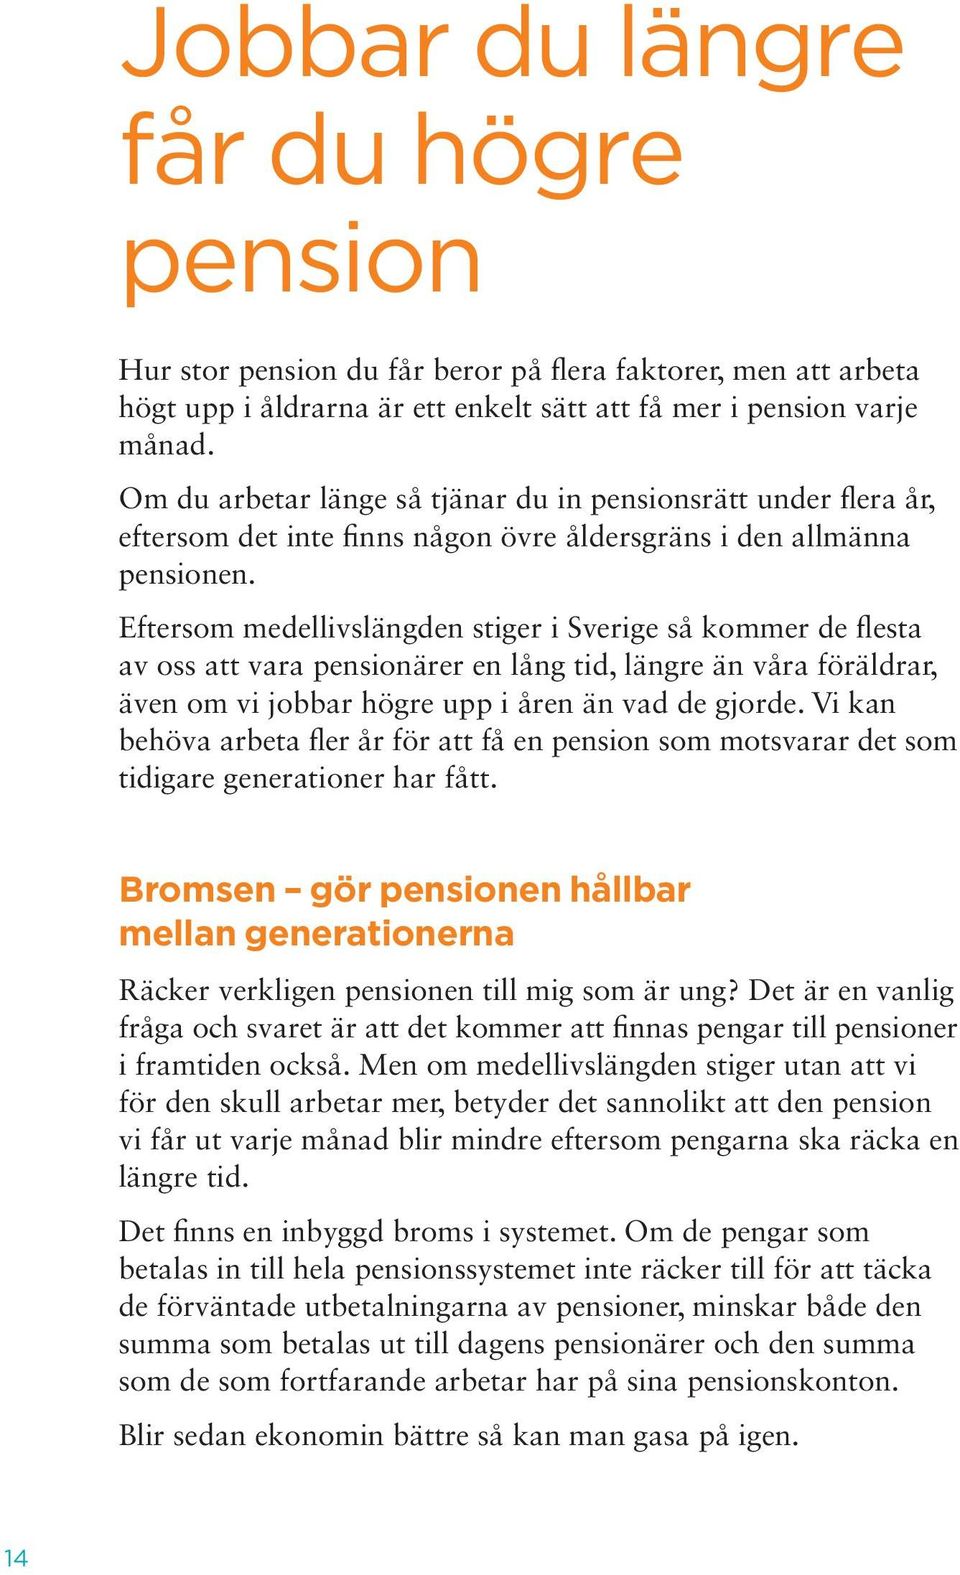 Eftersom medellivslängden stiger i Sverige så kommer de flesta av oss att vara pensionärer en lång tid, längre än våra föräldrar, även om vi jobbar högre upp i åren än vad de gjorde.